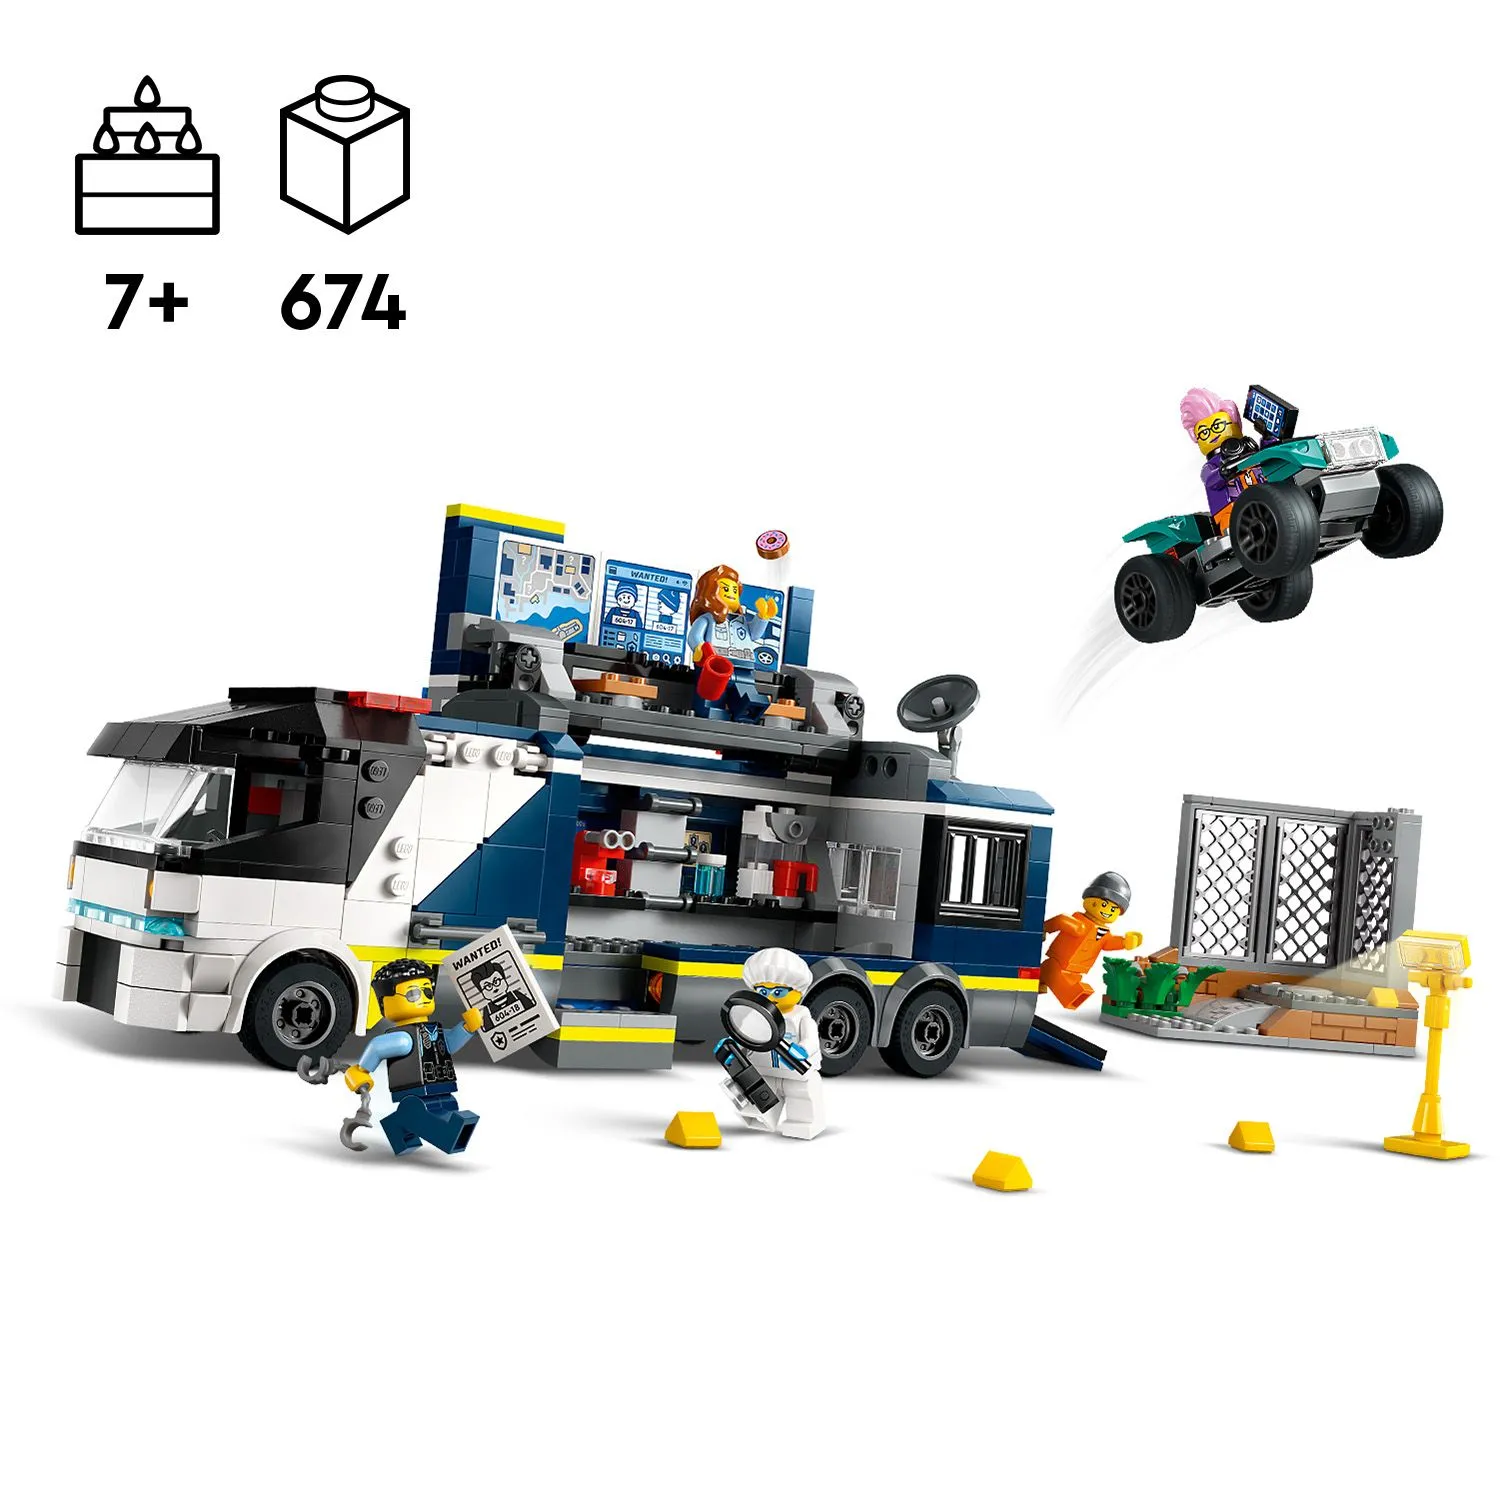 Набор LEGO® для конструирования и игры детей от 7 лет